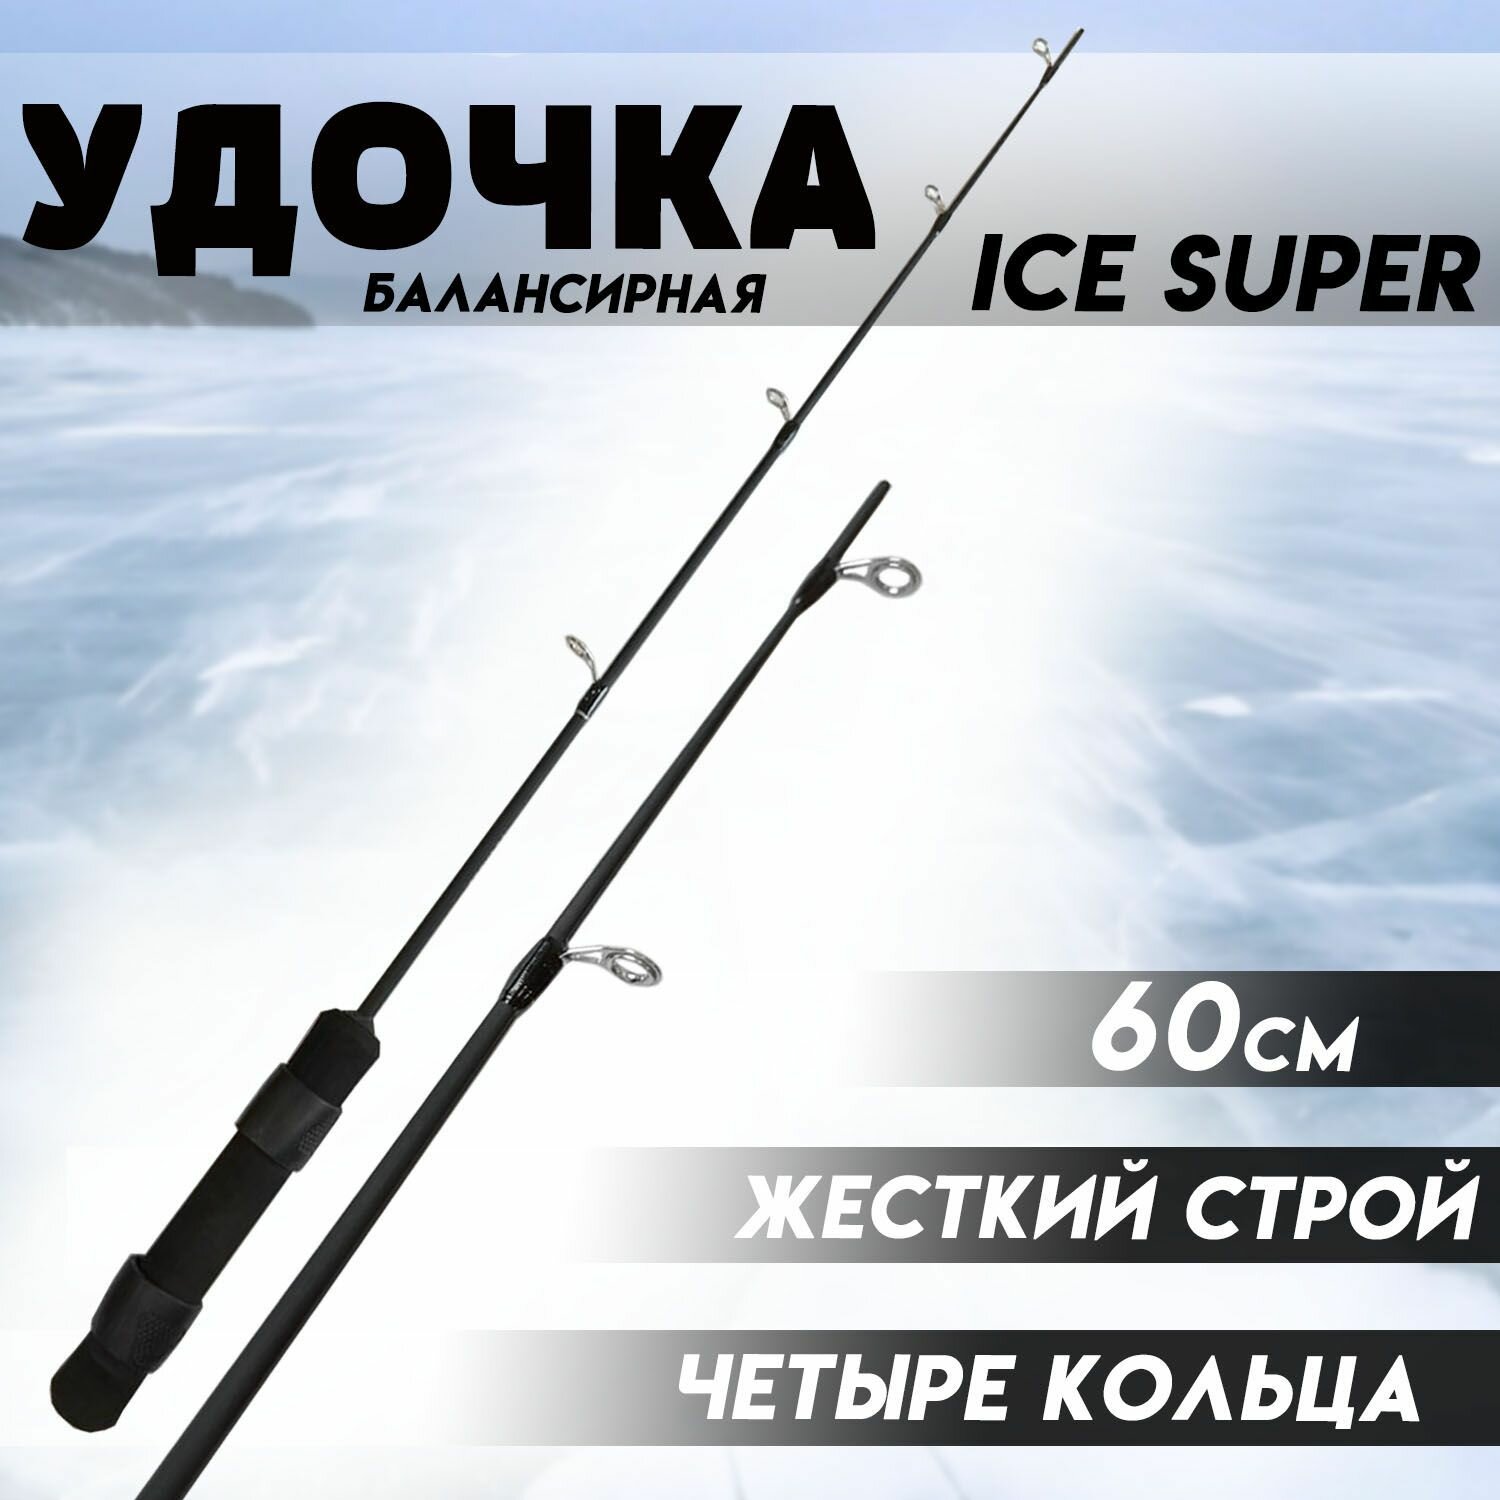 Удочка для зимней рыбалки Балансирная ICE SUPER 60 Жесткий строй - на хищную рыбу